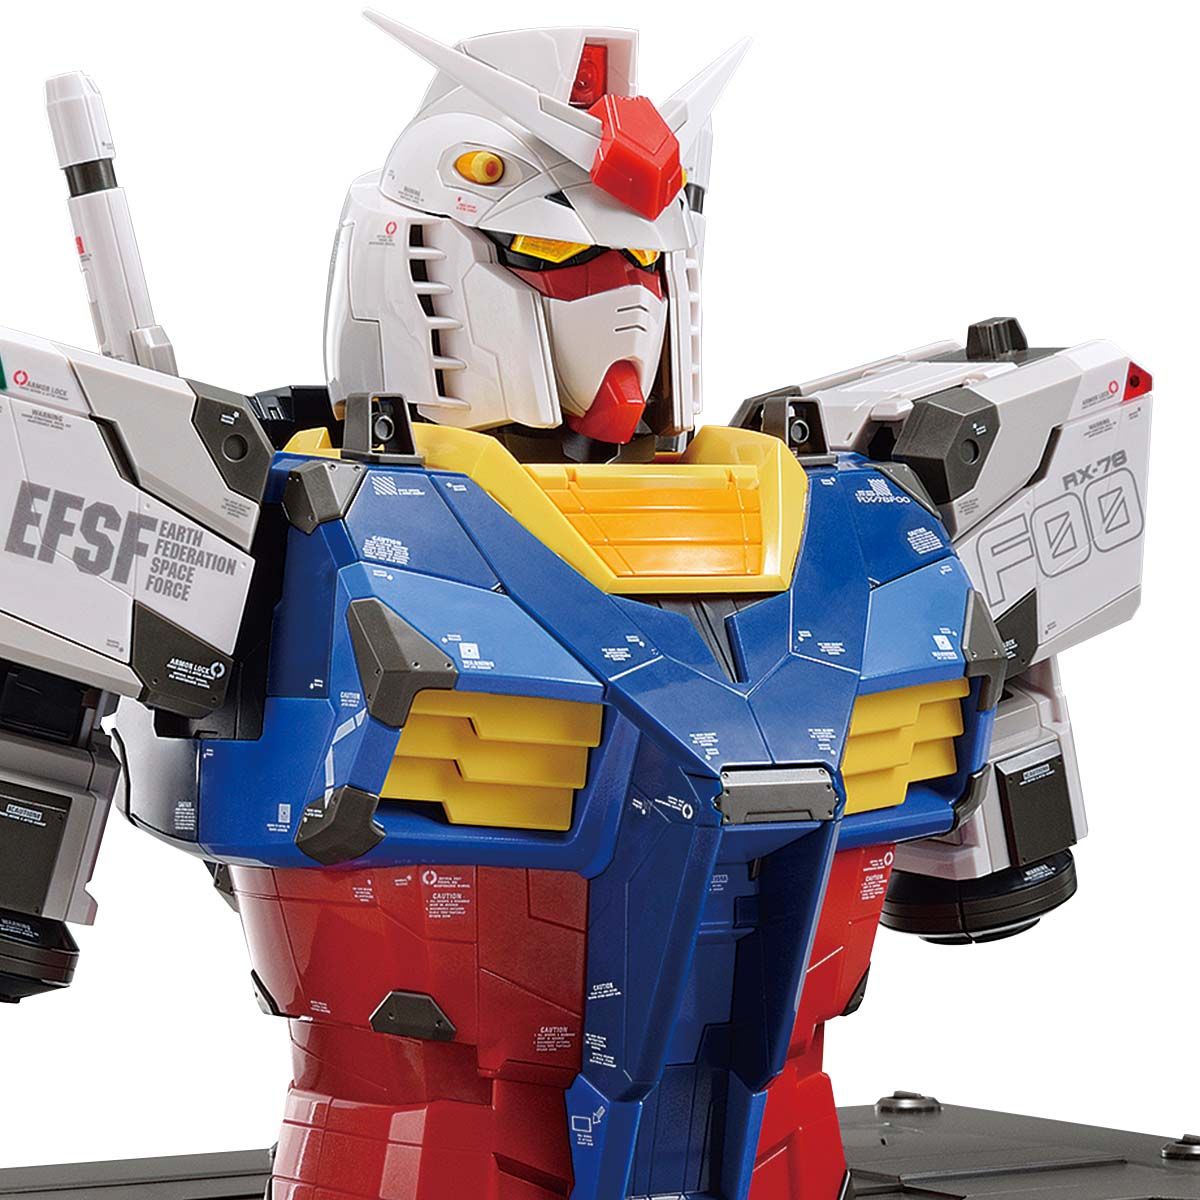 1/48 Scale Model RX-78F00 Gundam(Bust Model)